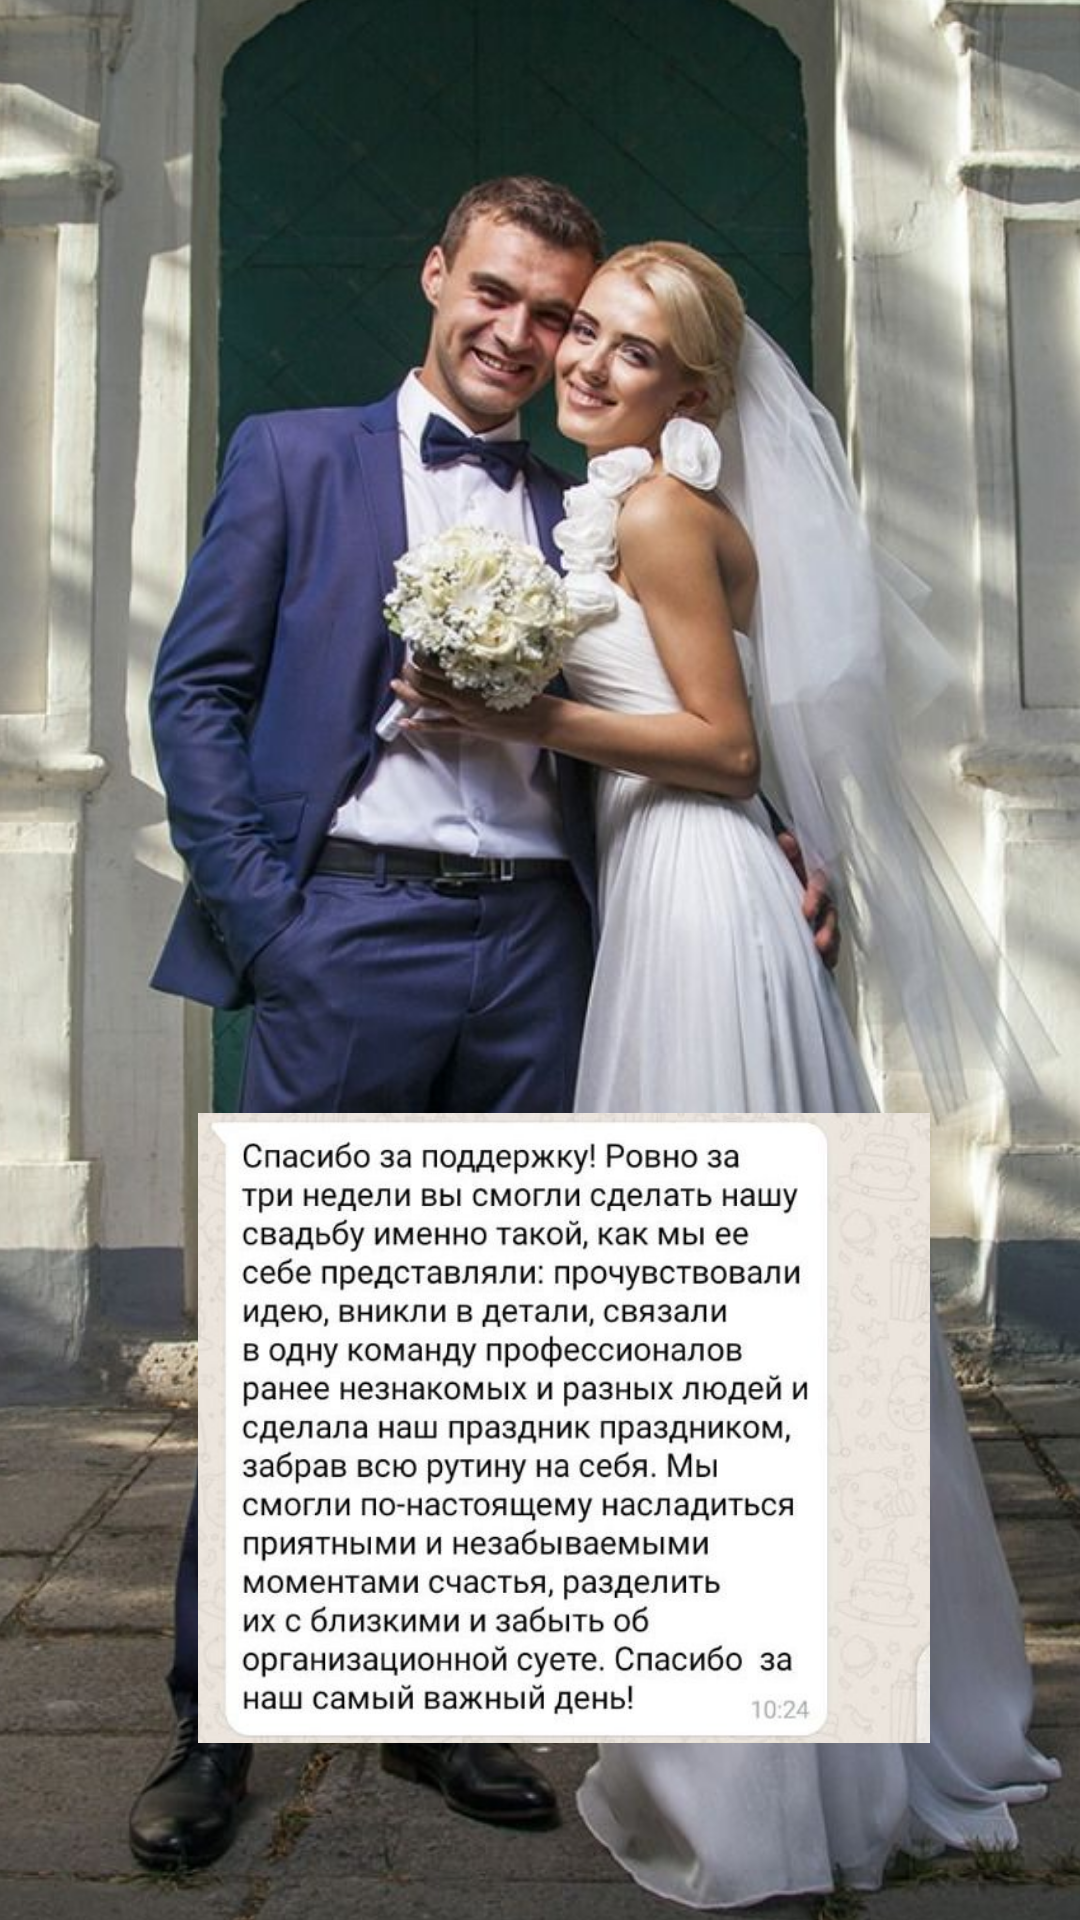 Организация свадьбы в Волгограде
от компании Pandaevent